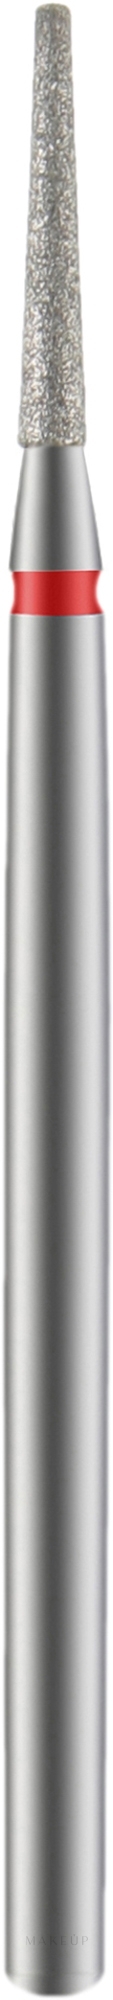 Diamantfräser Kegelstumpf rot Durchmesser 1,6 mm Arbeitsteil 10 mm - Staleks Pro — Bild 1 St.